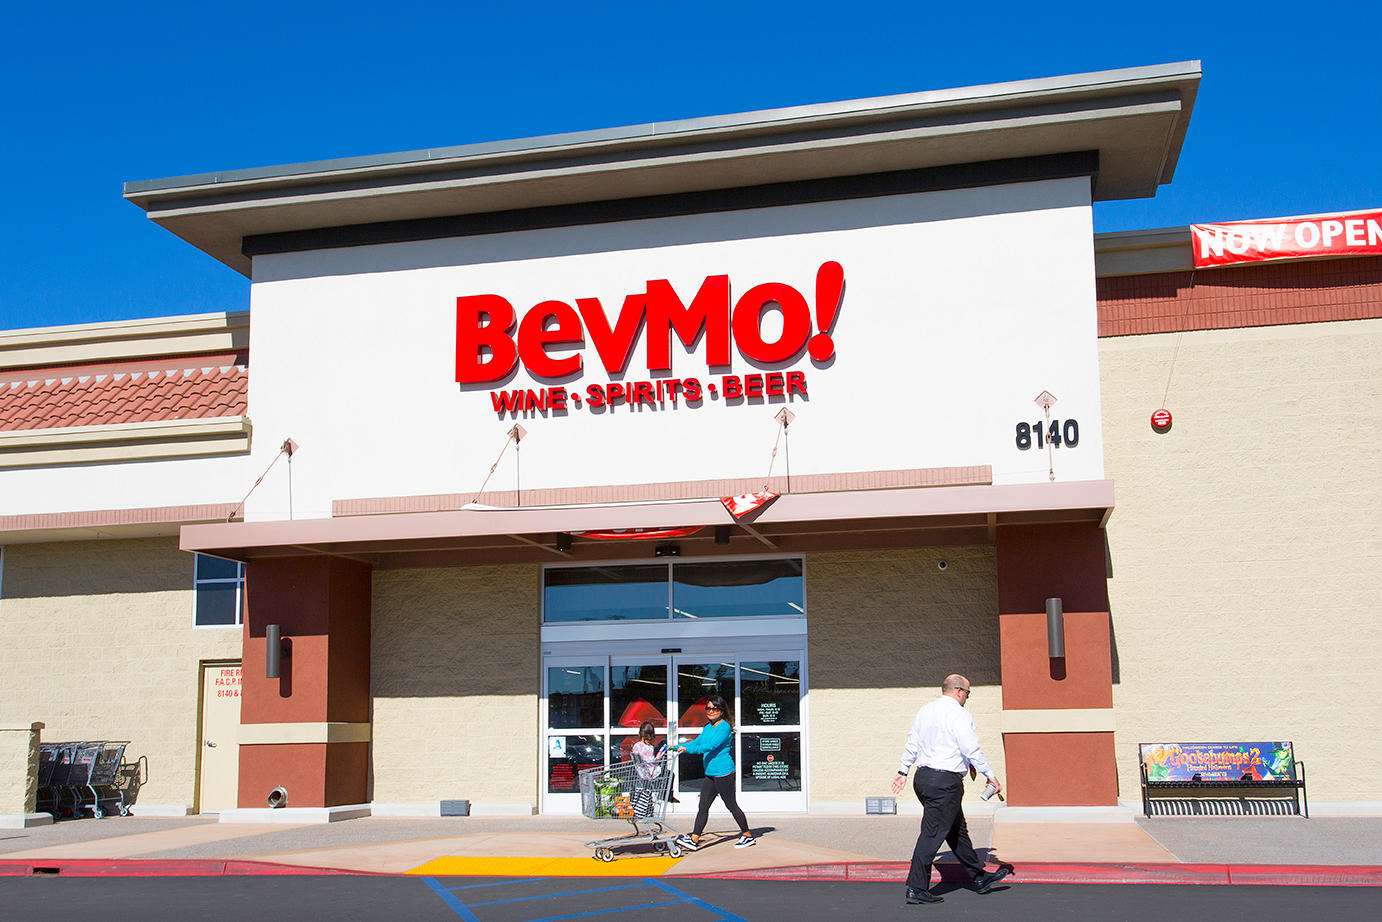 Bevmo! at Village at Mira Mesa Shopping Center